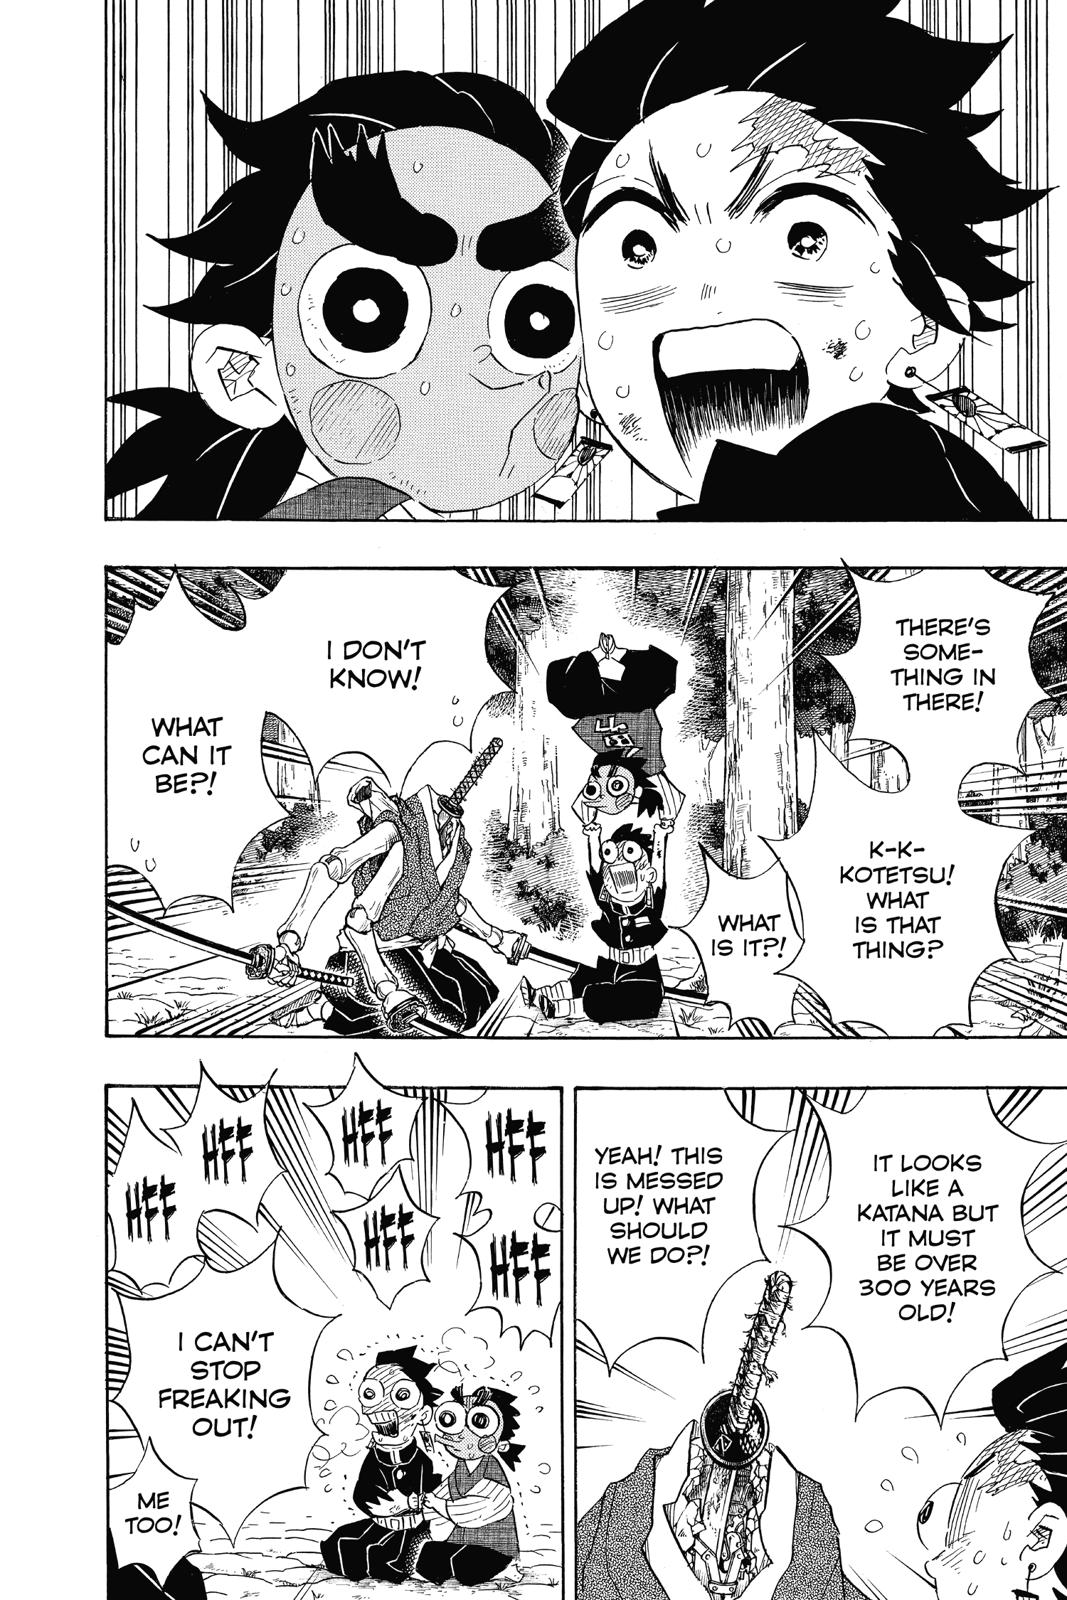 Demon Slayer Manga Manga Chapter - 105 - image 2